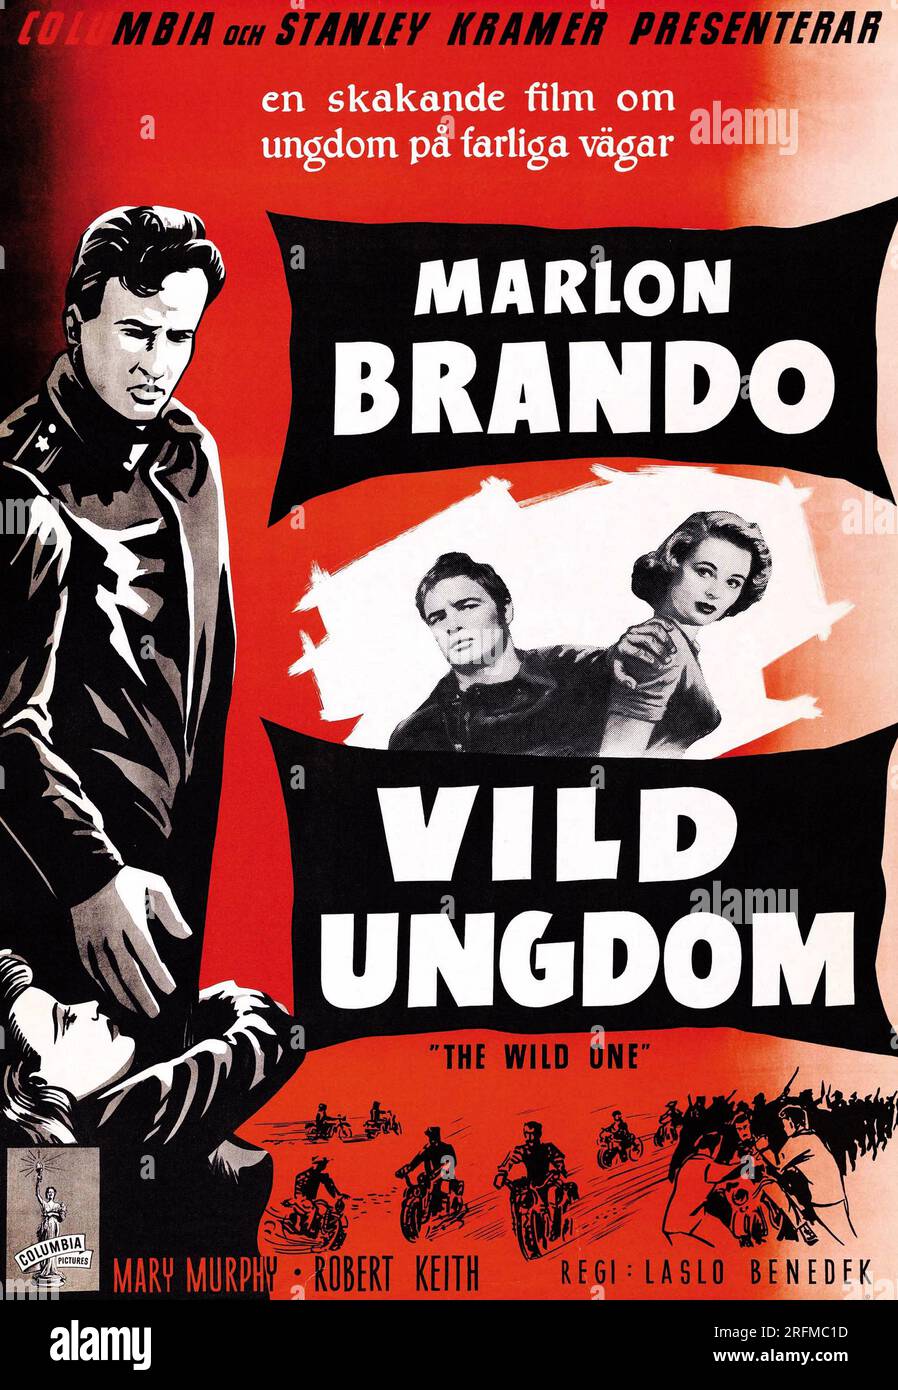 Vild ungdom' (Español: The Wild One) Una película estadounidense de motociclistas fuera de la ley de 1953 protagonizada por Marlon Brando. Foto de stock